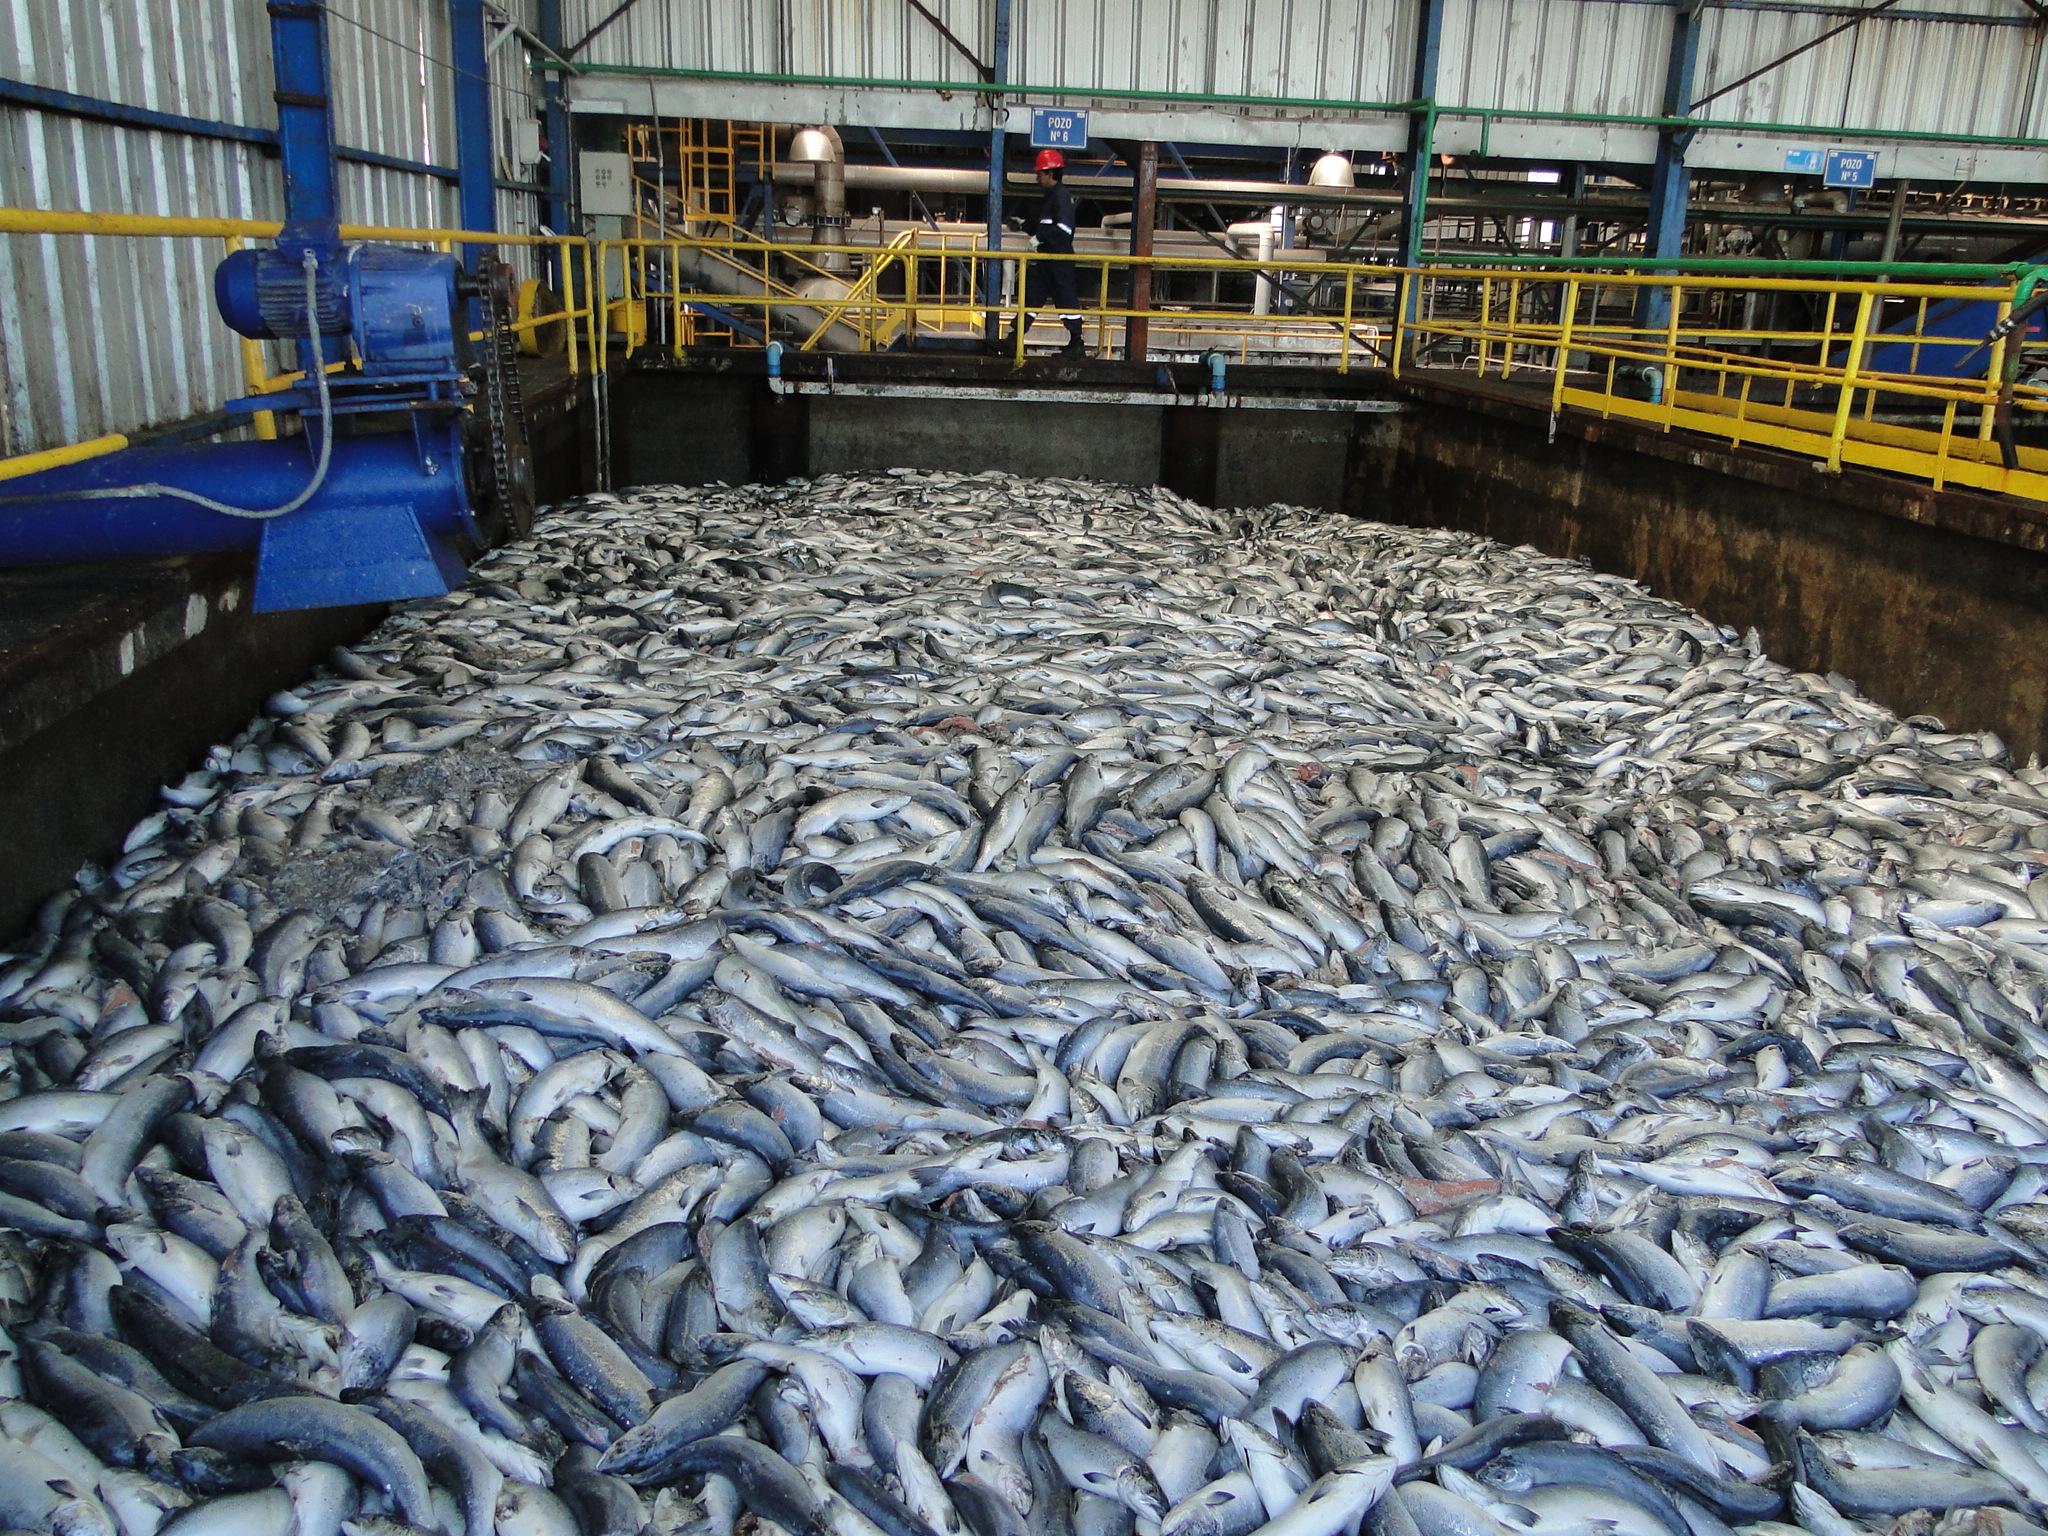 Advierten sobre los riesgos sanitarios por miles de toneladas de salmones muertos depositados en el mar